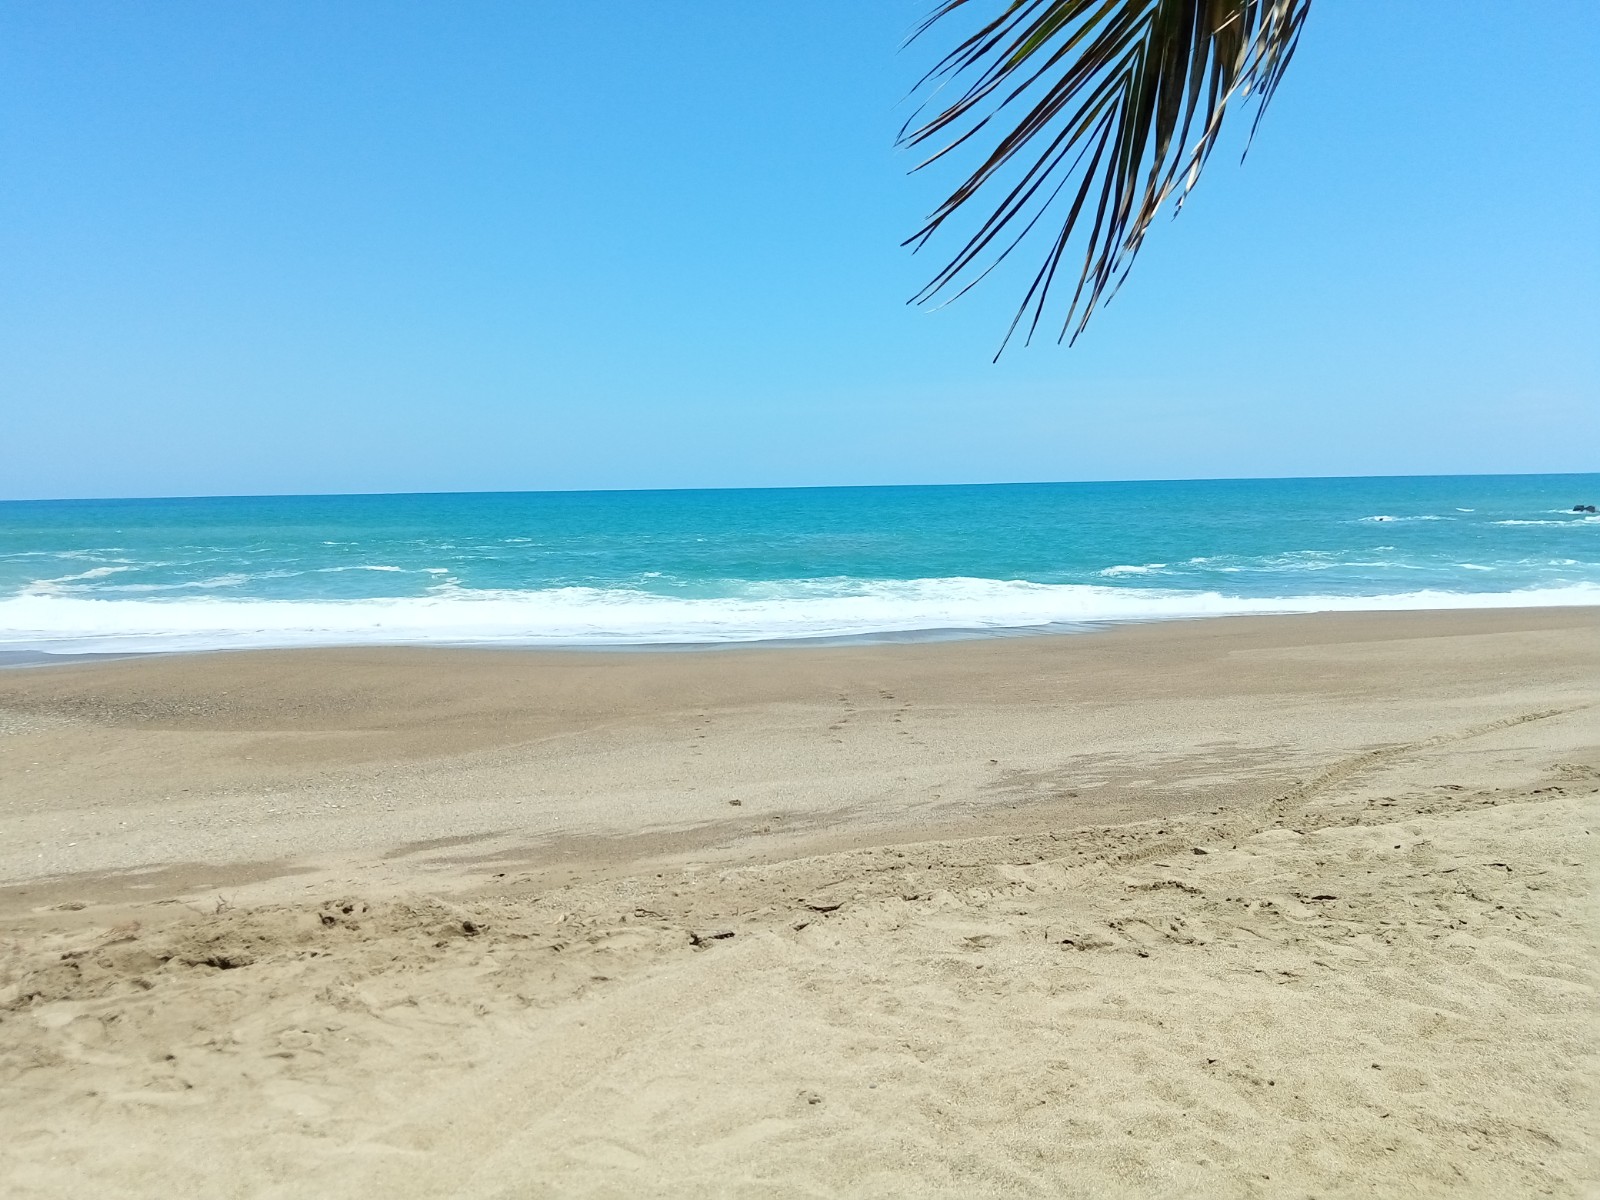 Zdjęcie Playa Rangel z przestronna plaża